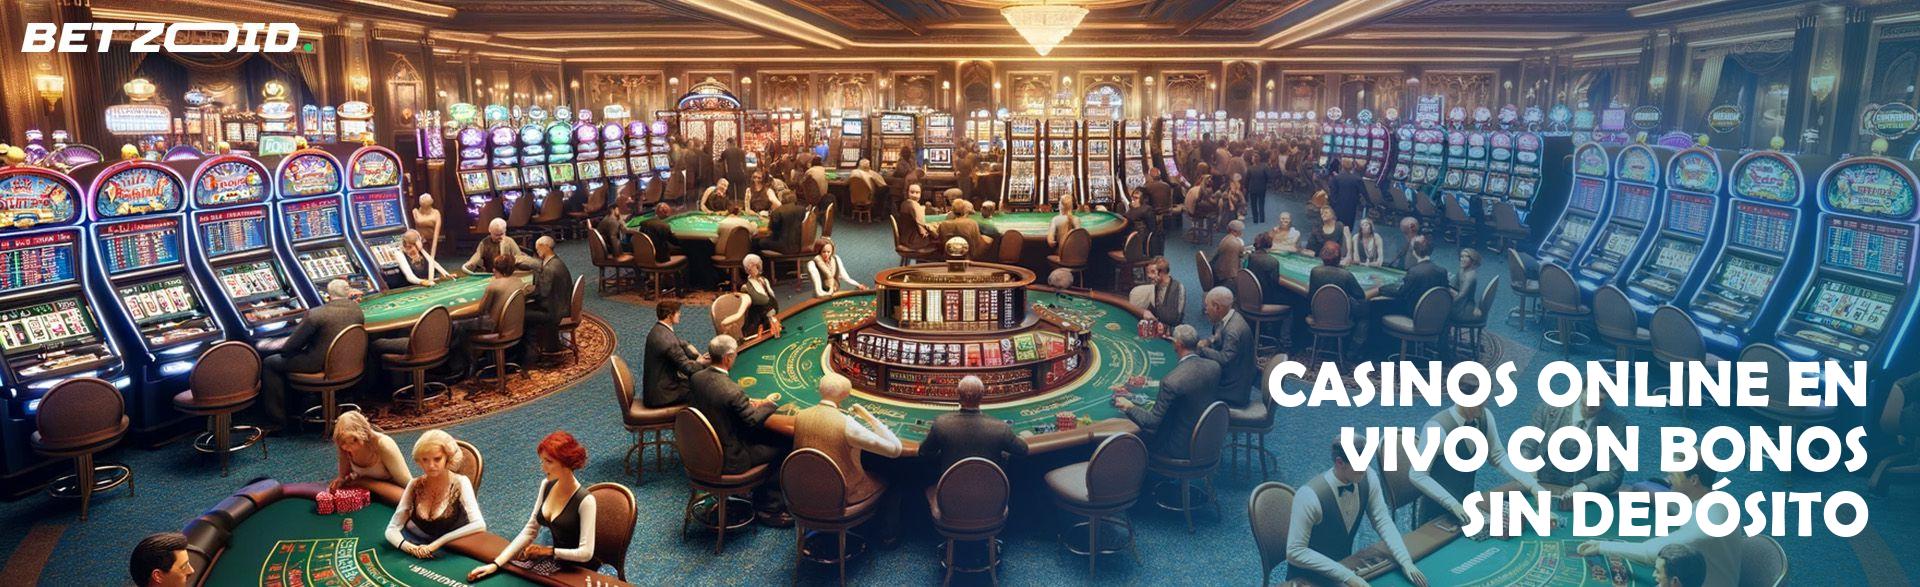 Casinos Online En Vivo con Bonos sin Depósito.